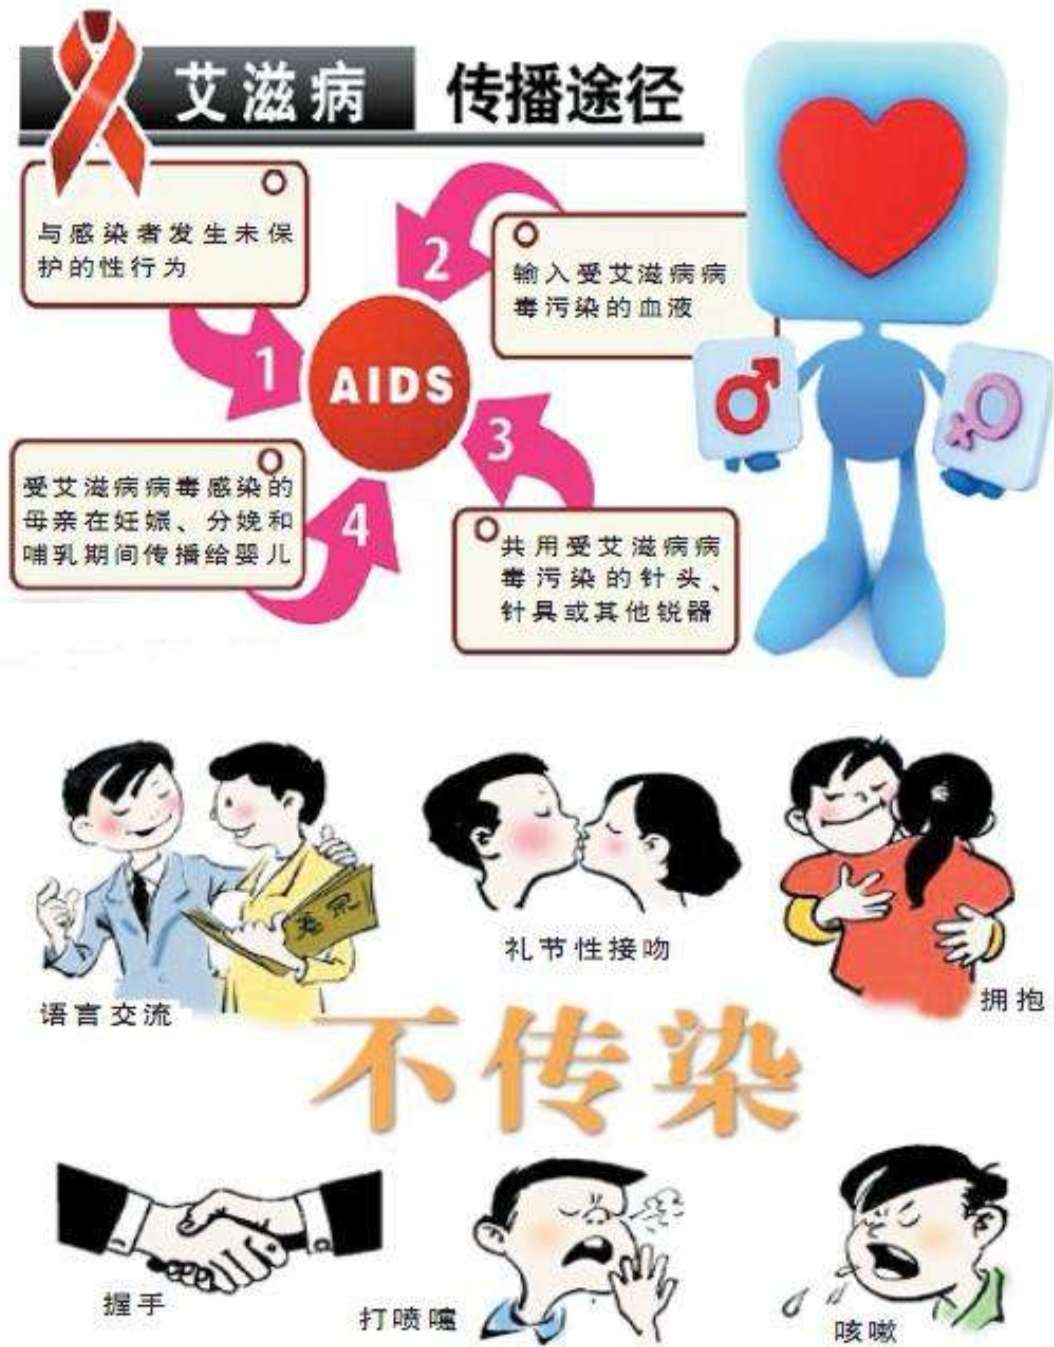 急性艾滋病的初期症状_第四代艾滋病检测试剂盒_艾滋病急性期